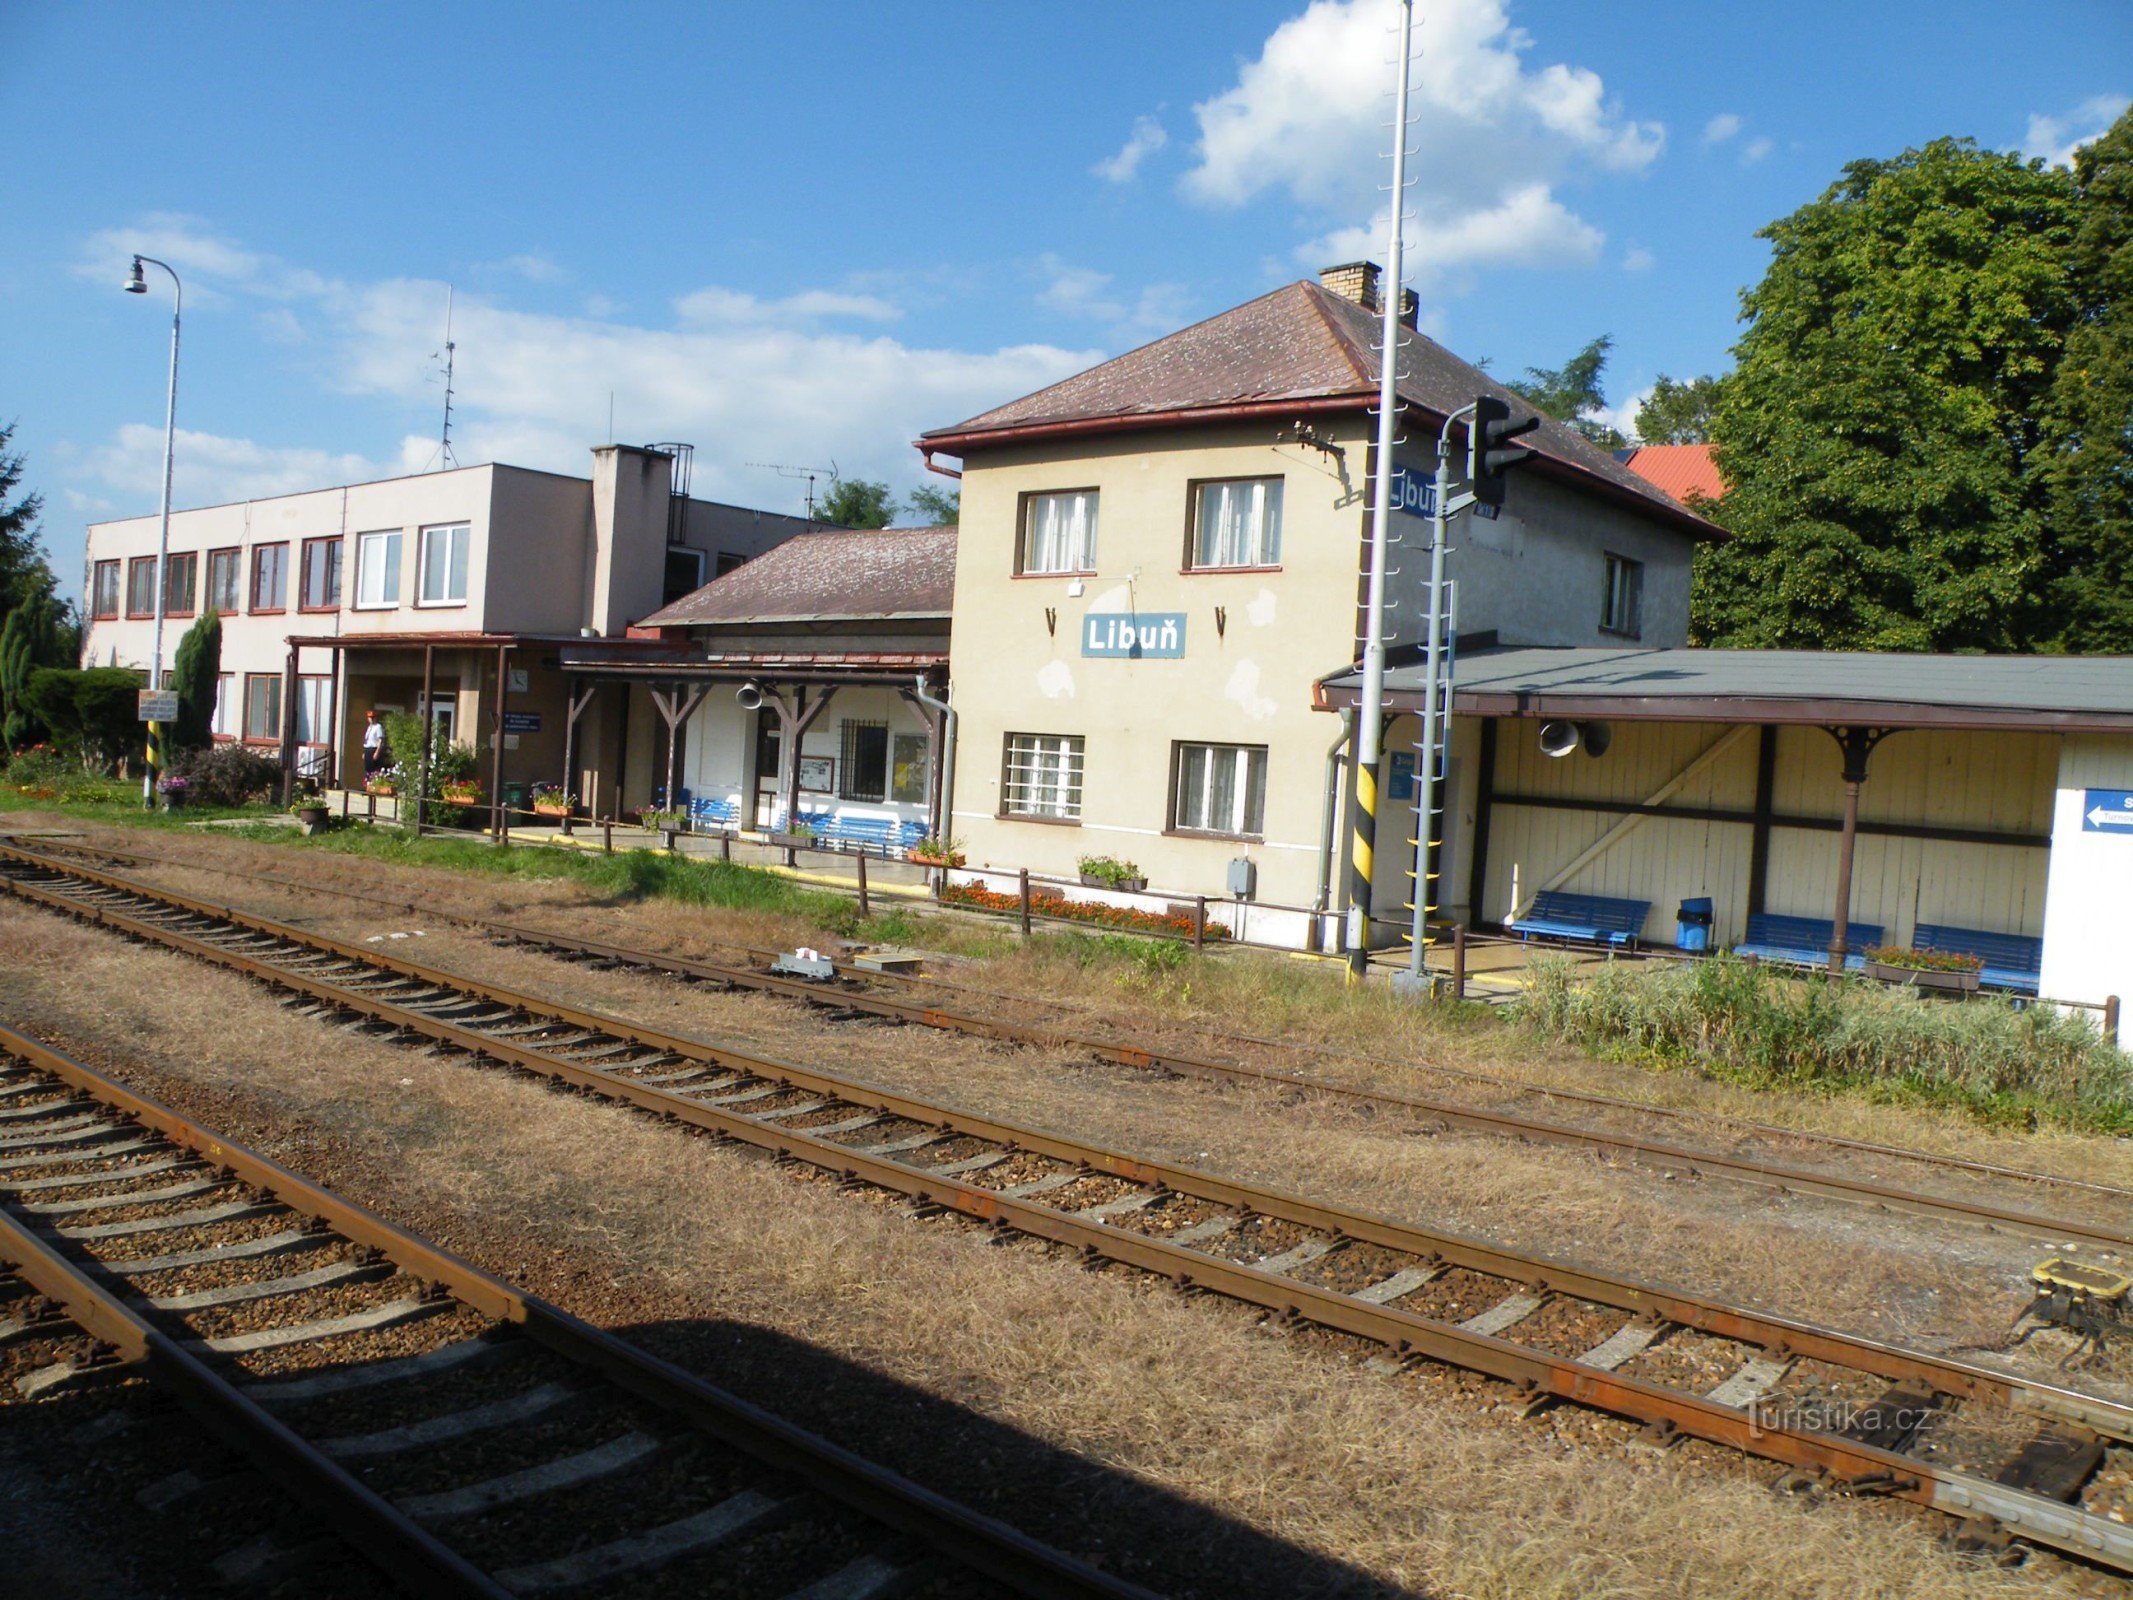 Libuň - stazione ferroviaria